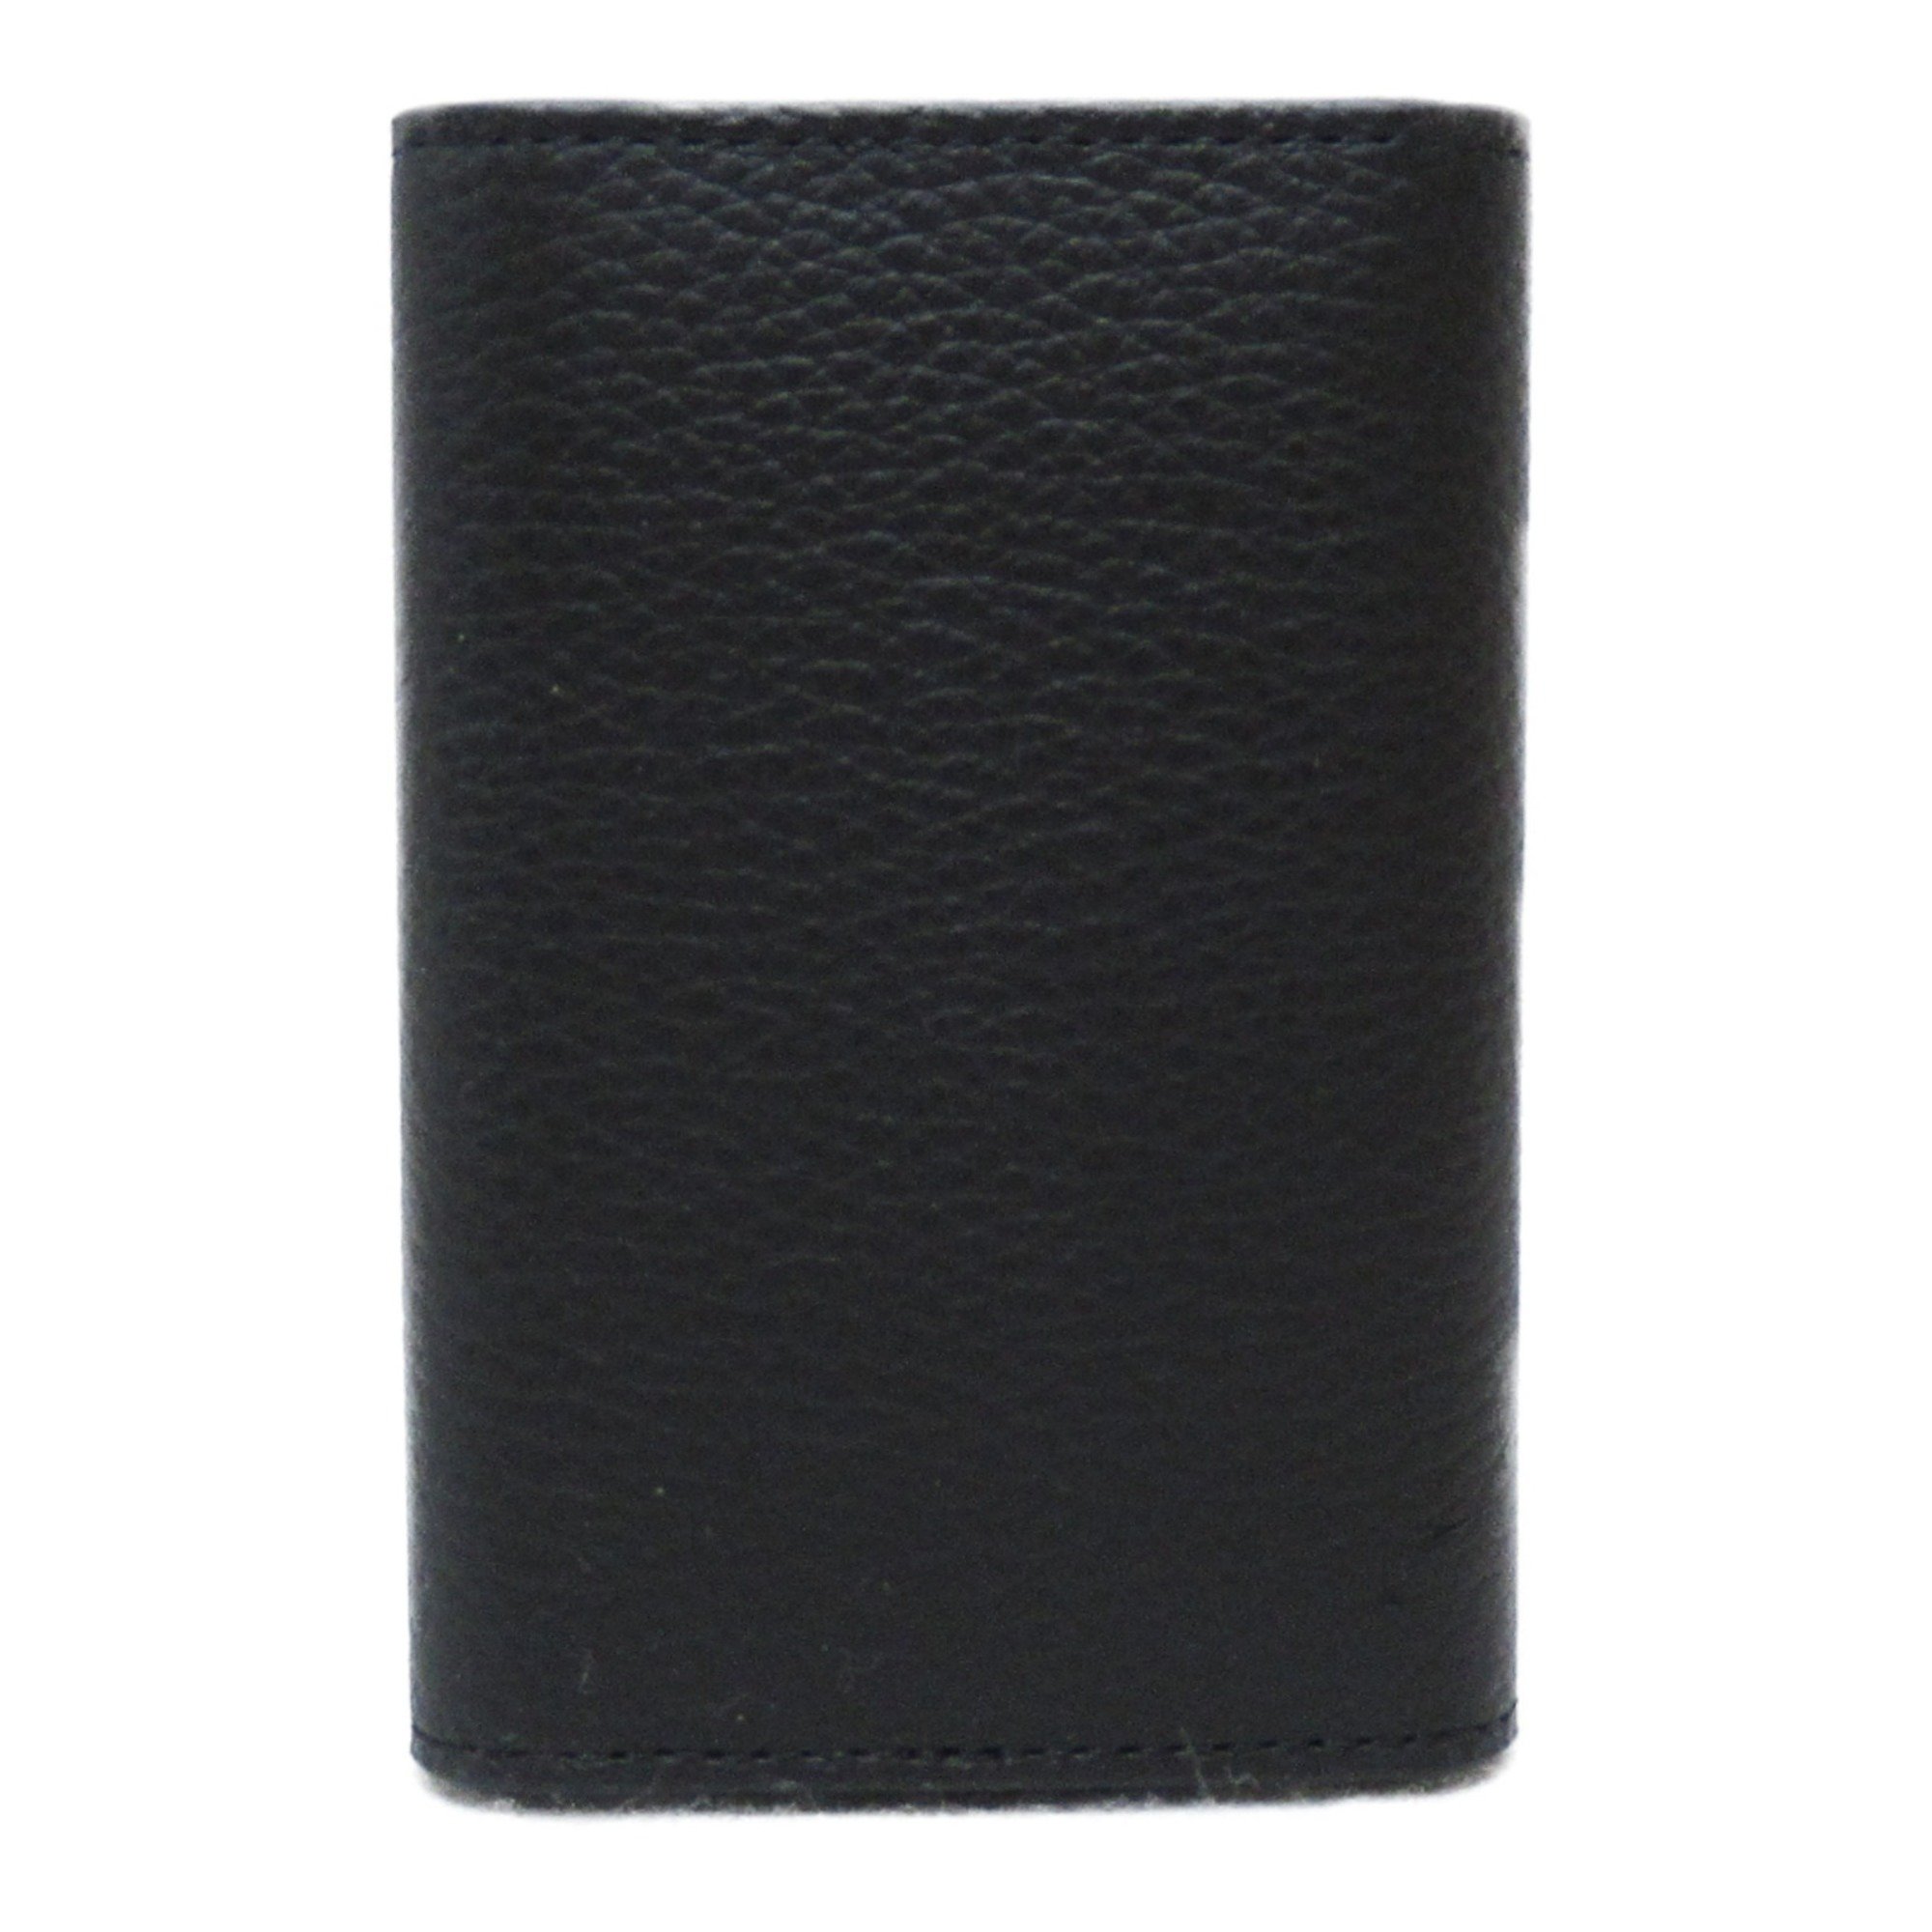 Dunhill key holder Black leather 19F2950AV